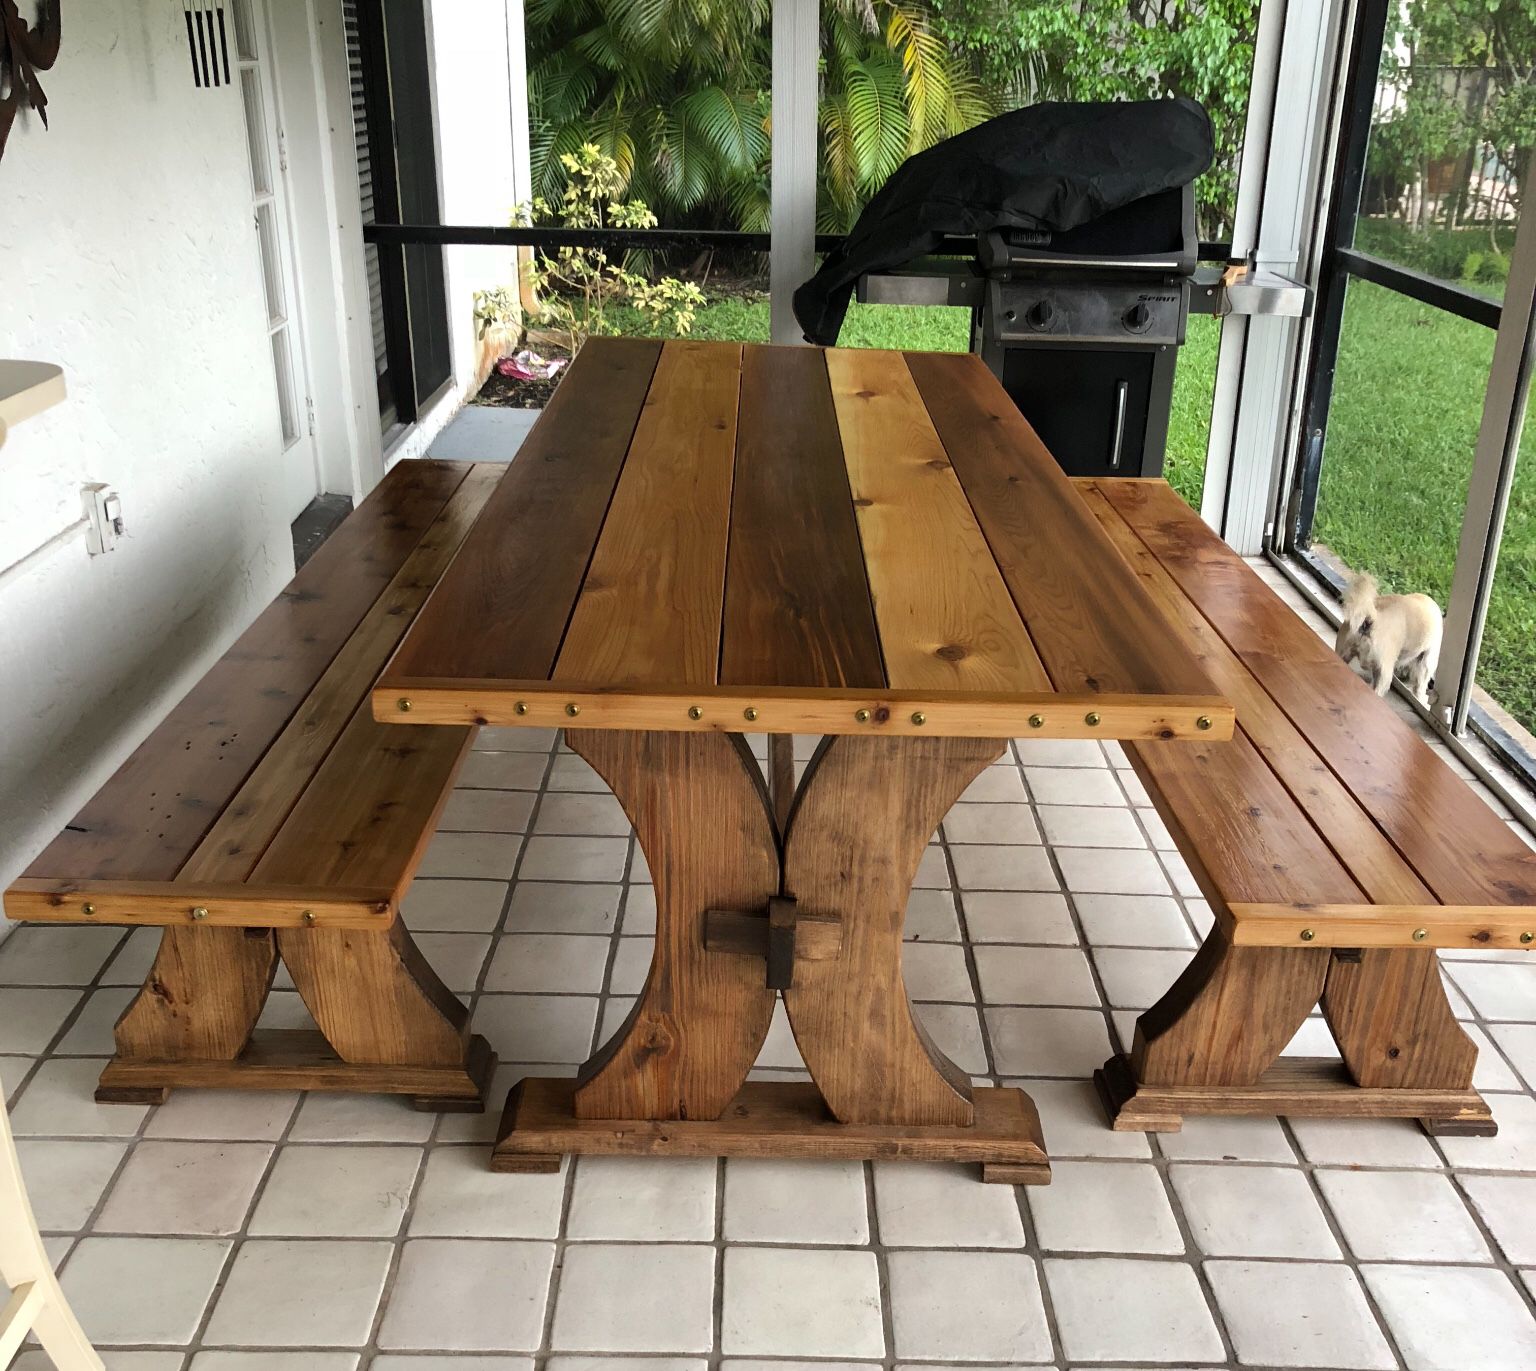 Viking long table